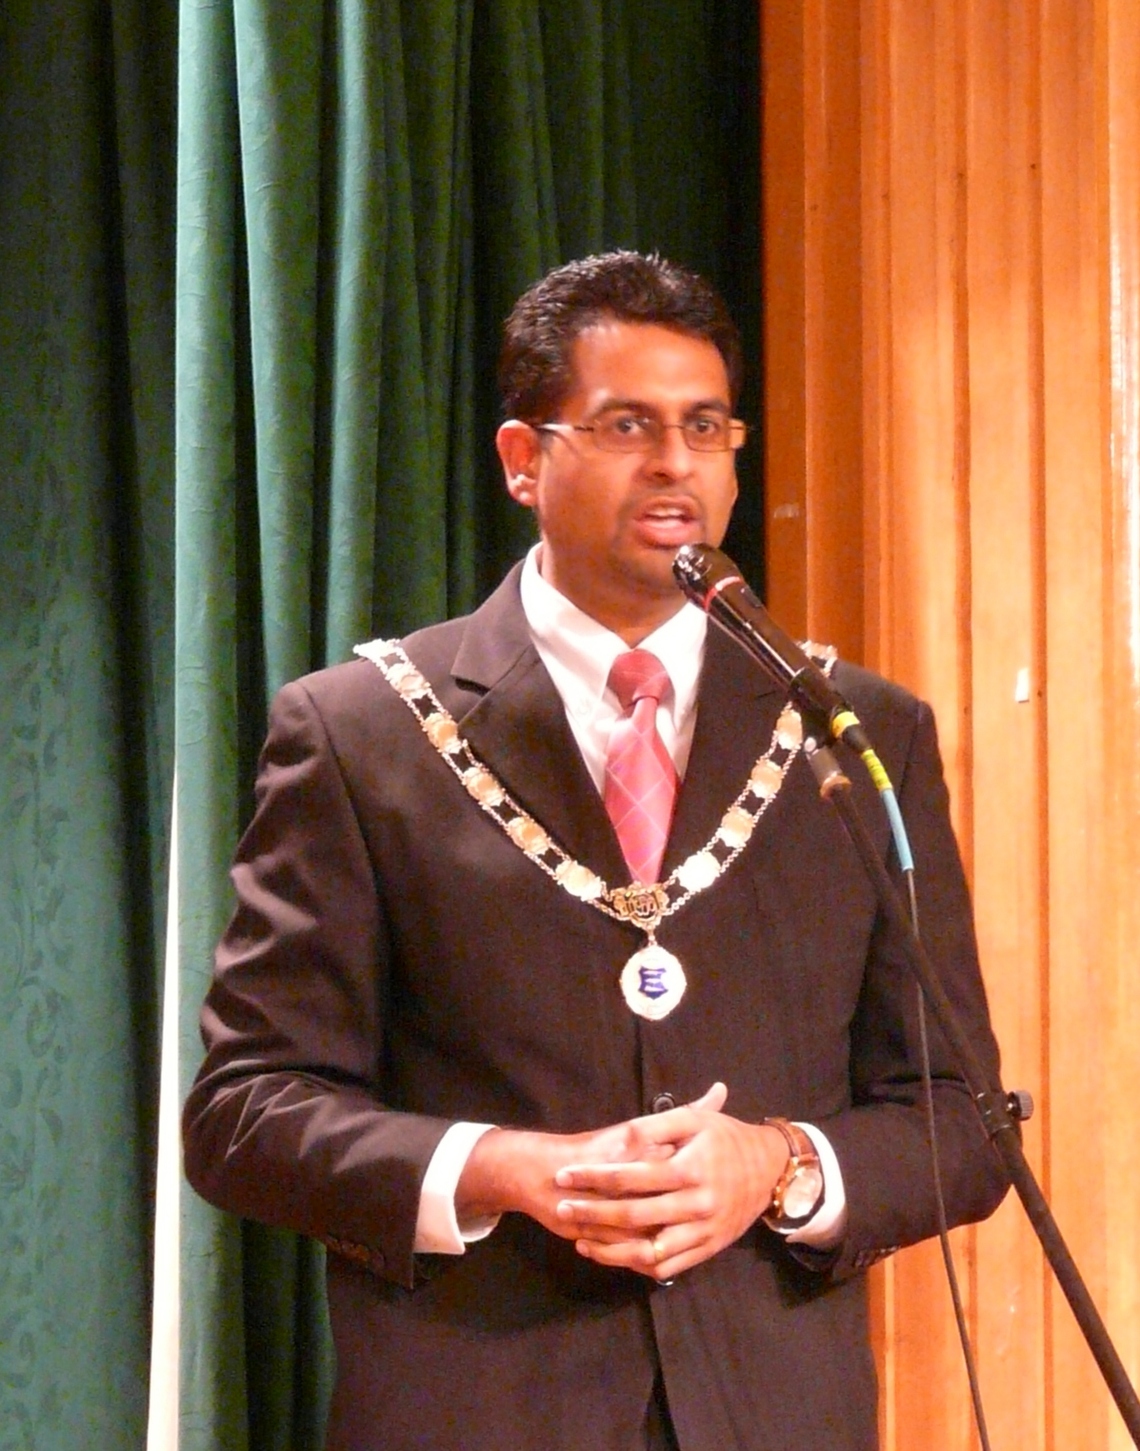 Deputy Mayor